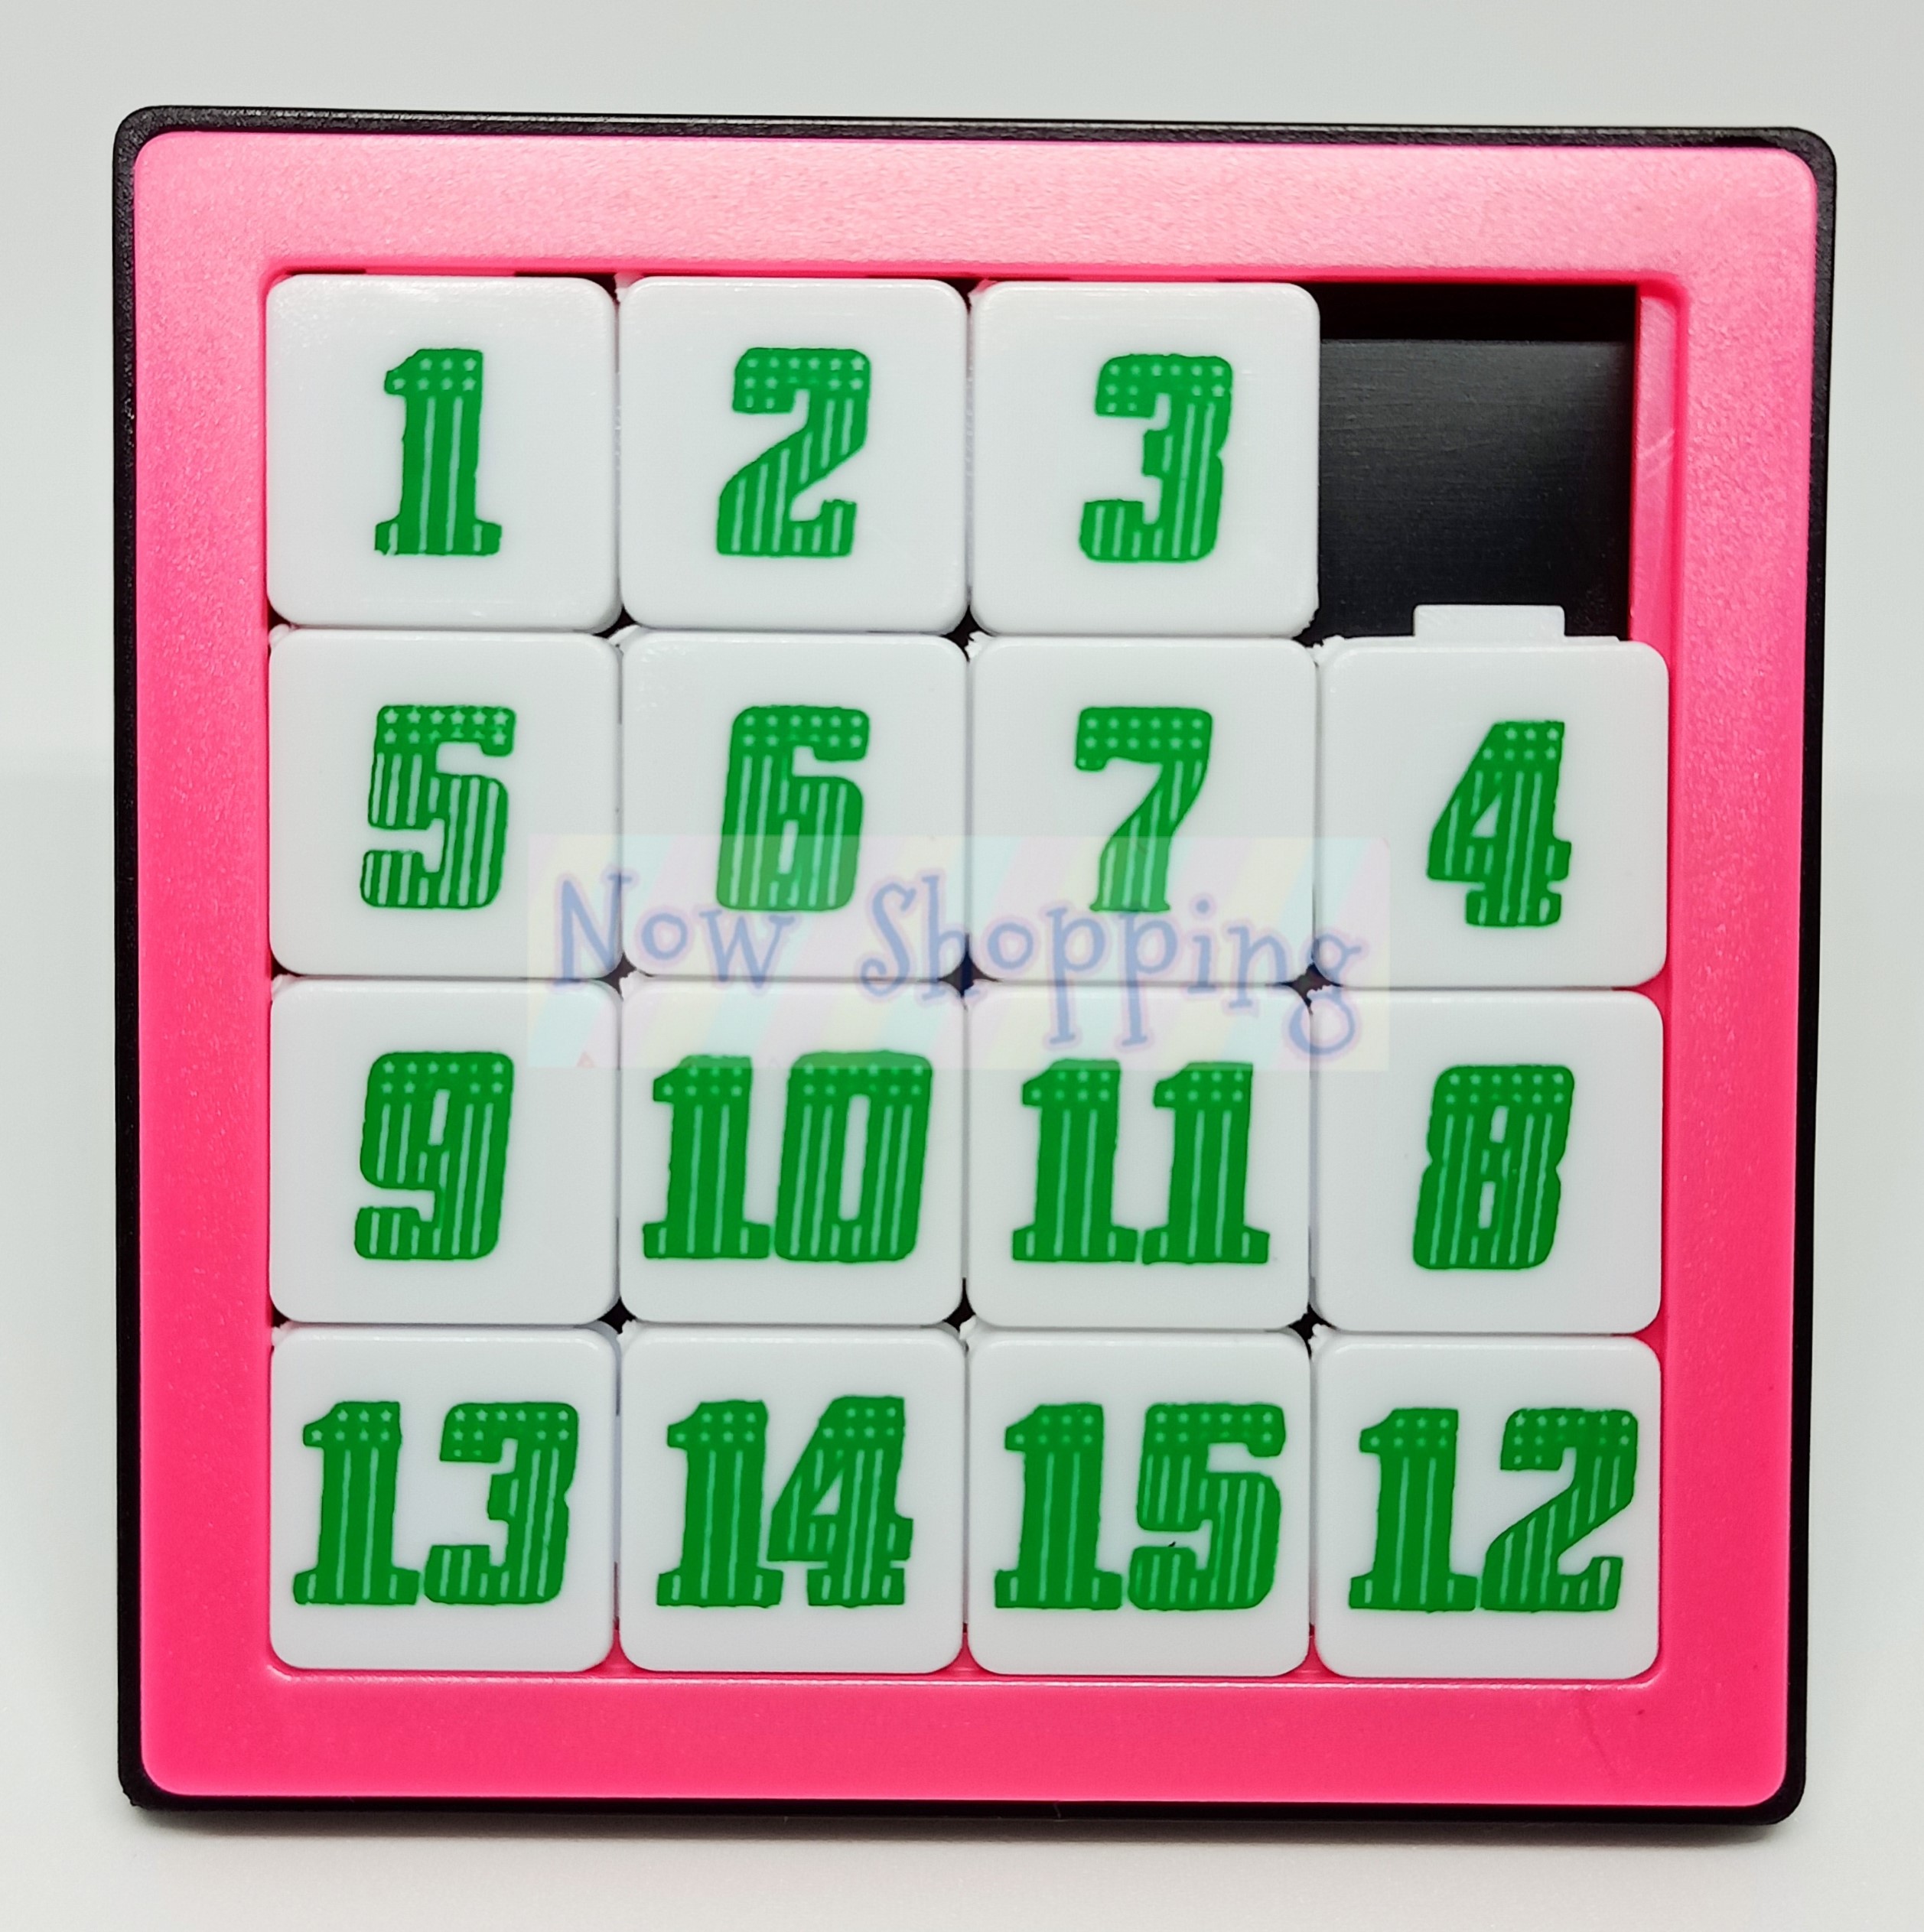 (1 ชิ้นคละสี) เกมเรียงตัวเลข เกมเลื่อนตัวเลข ของเล่นฝึกสมาธิ ฝึกสมอง ฝึกทักษะ สนุกสนานเพลิดเพลิน #ของเล่นโบราณ #Vintage toys